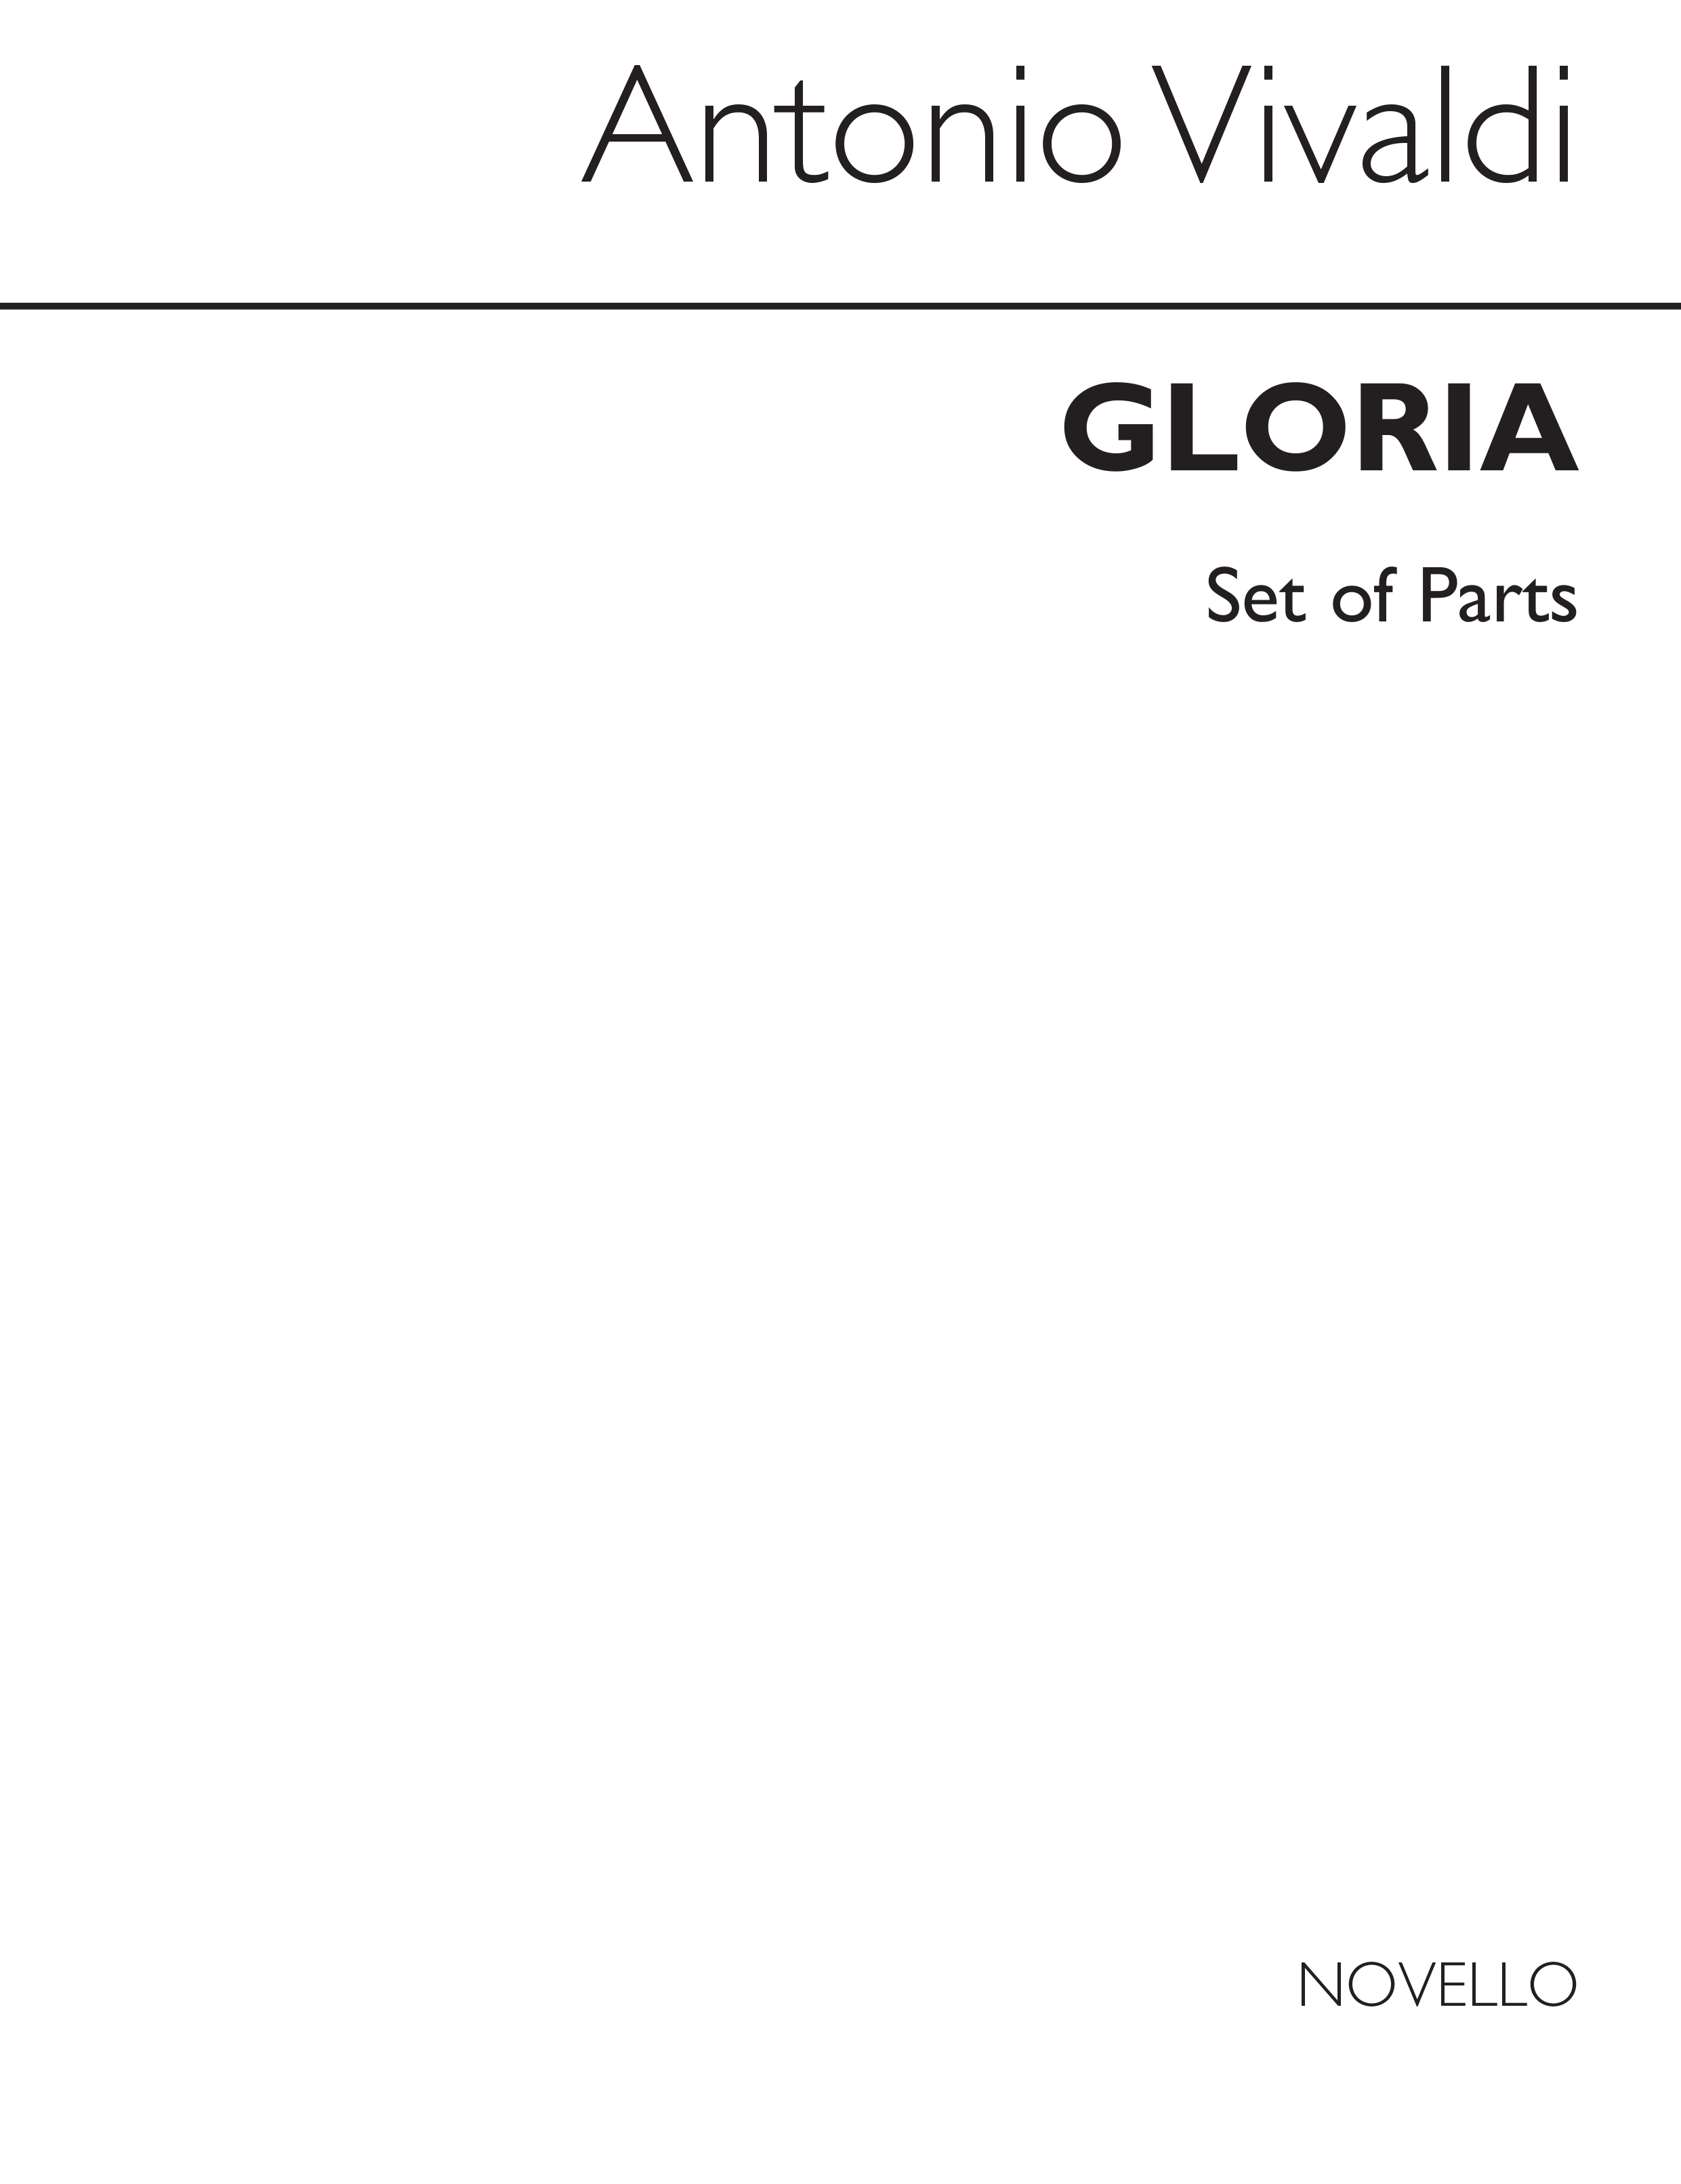 Antonio Vivaldi: Gloria in D RV.589 (Cameron ed.) - Parts: SATB: Parts